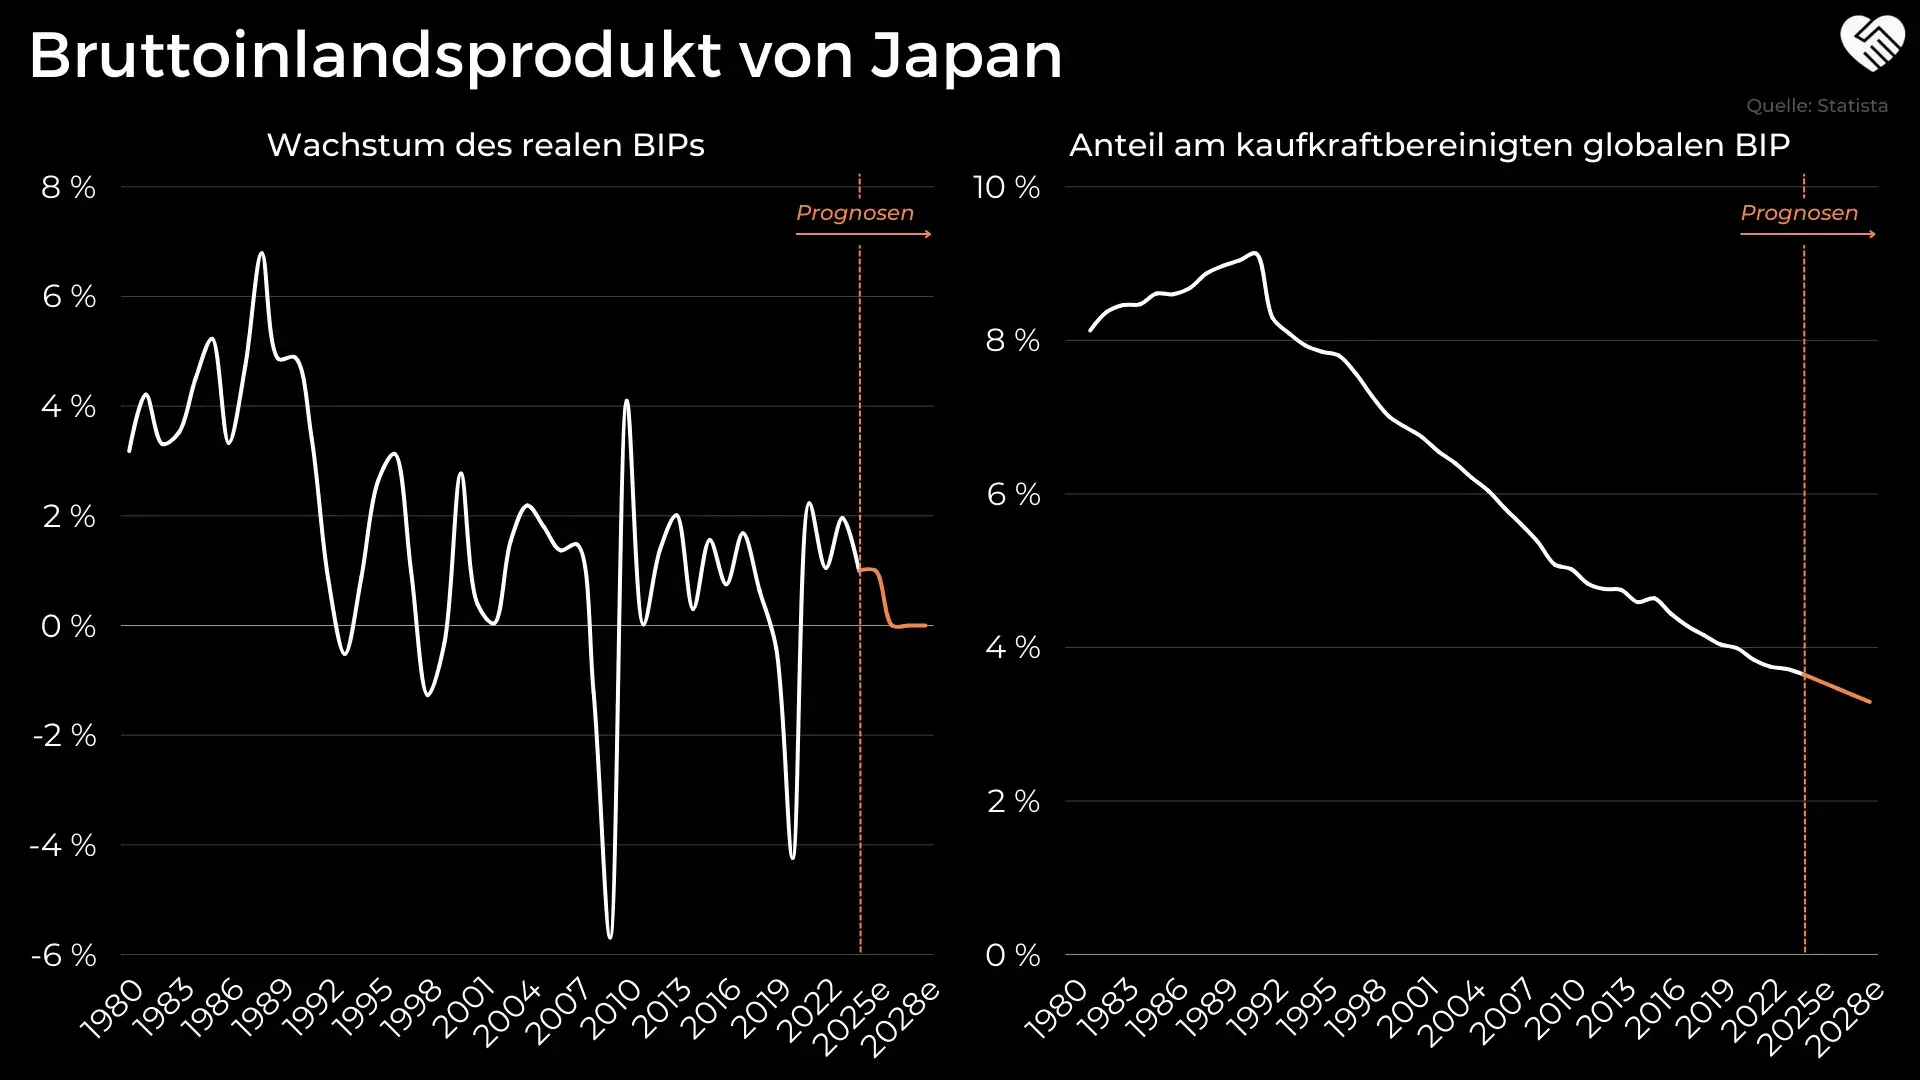 Bruttoinlandsprodukt (BIP) von Japan